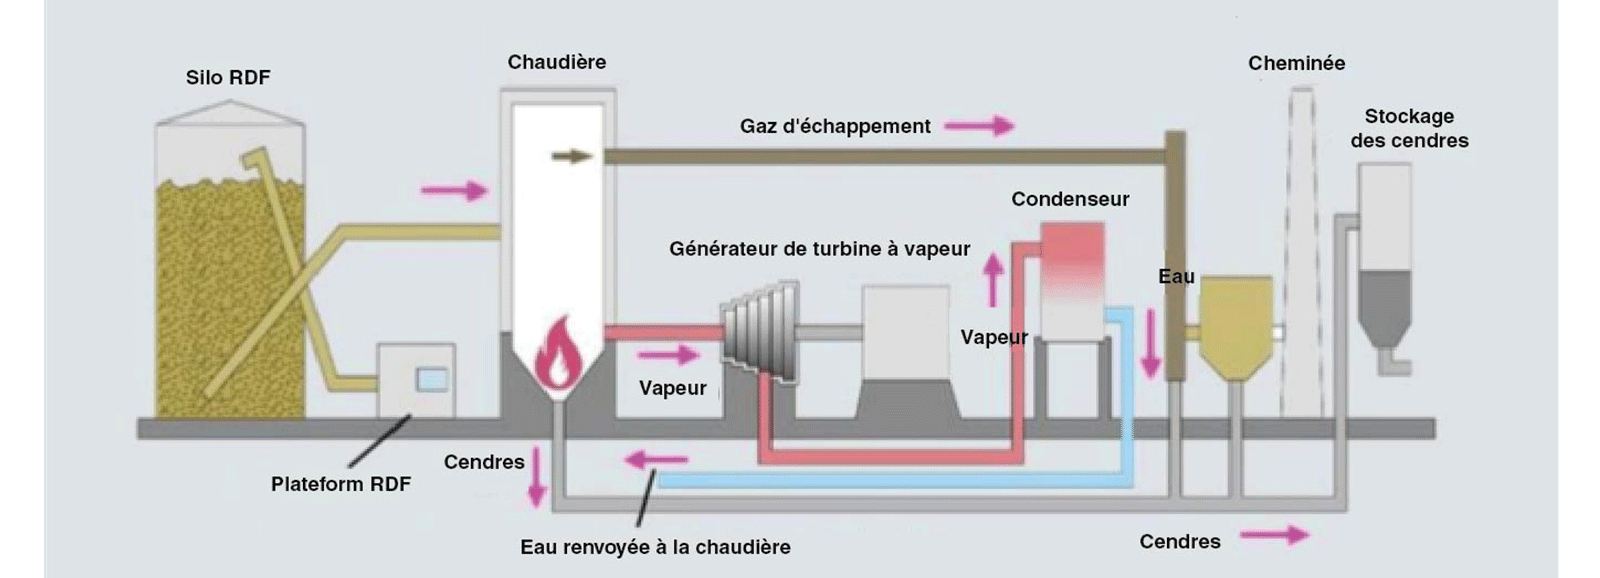 Production d'electricité - combustible solide de récupération csr